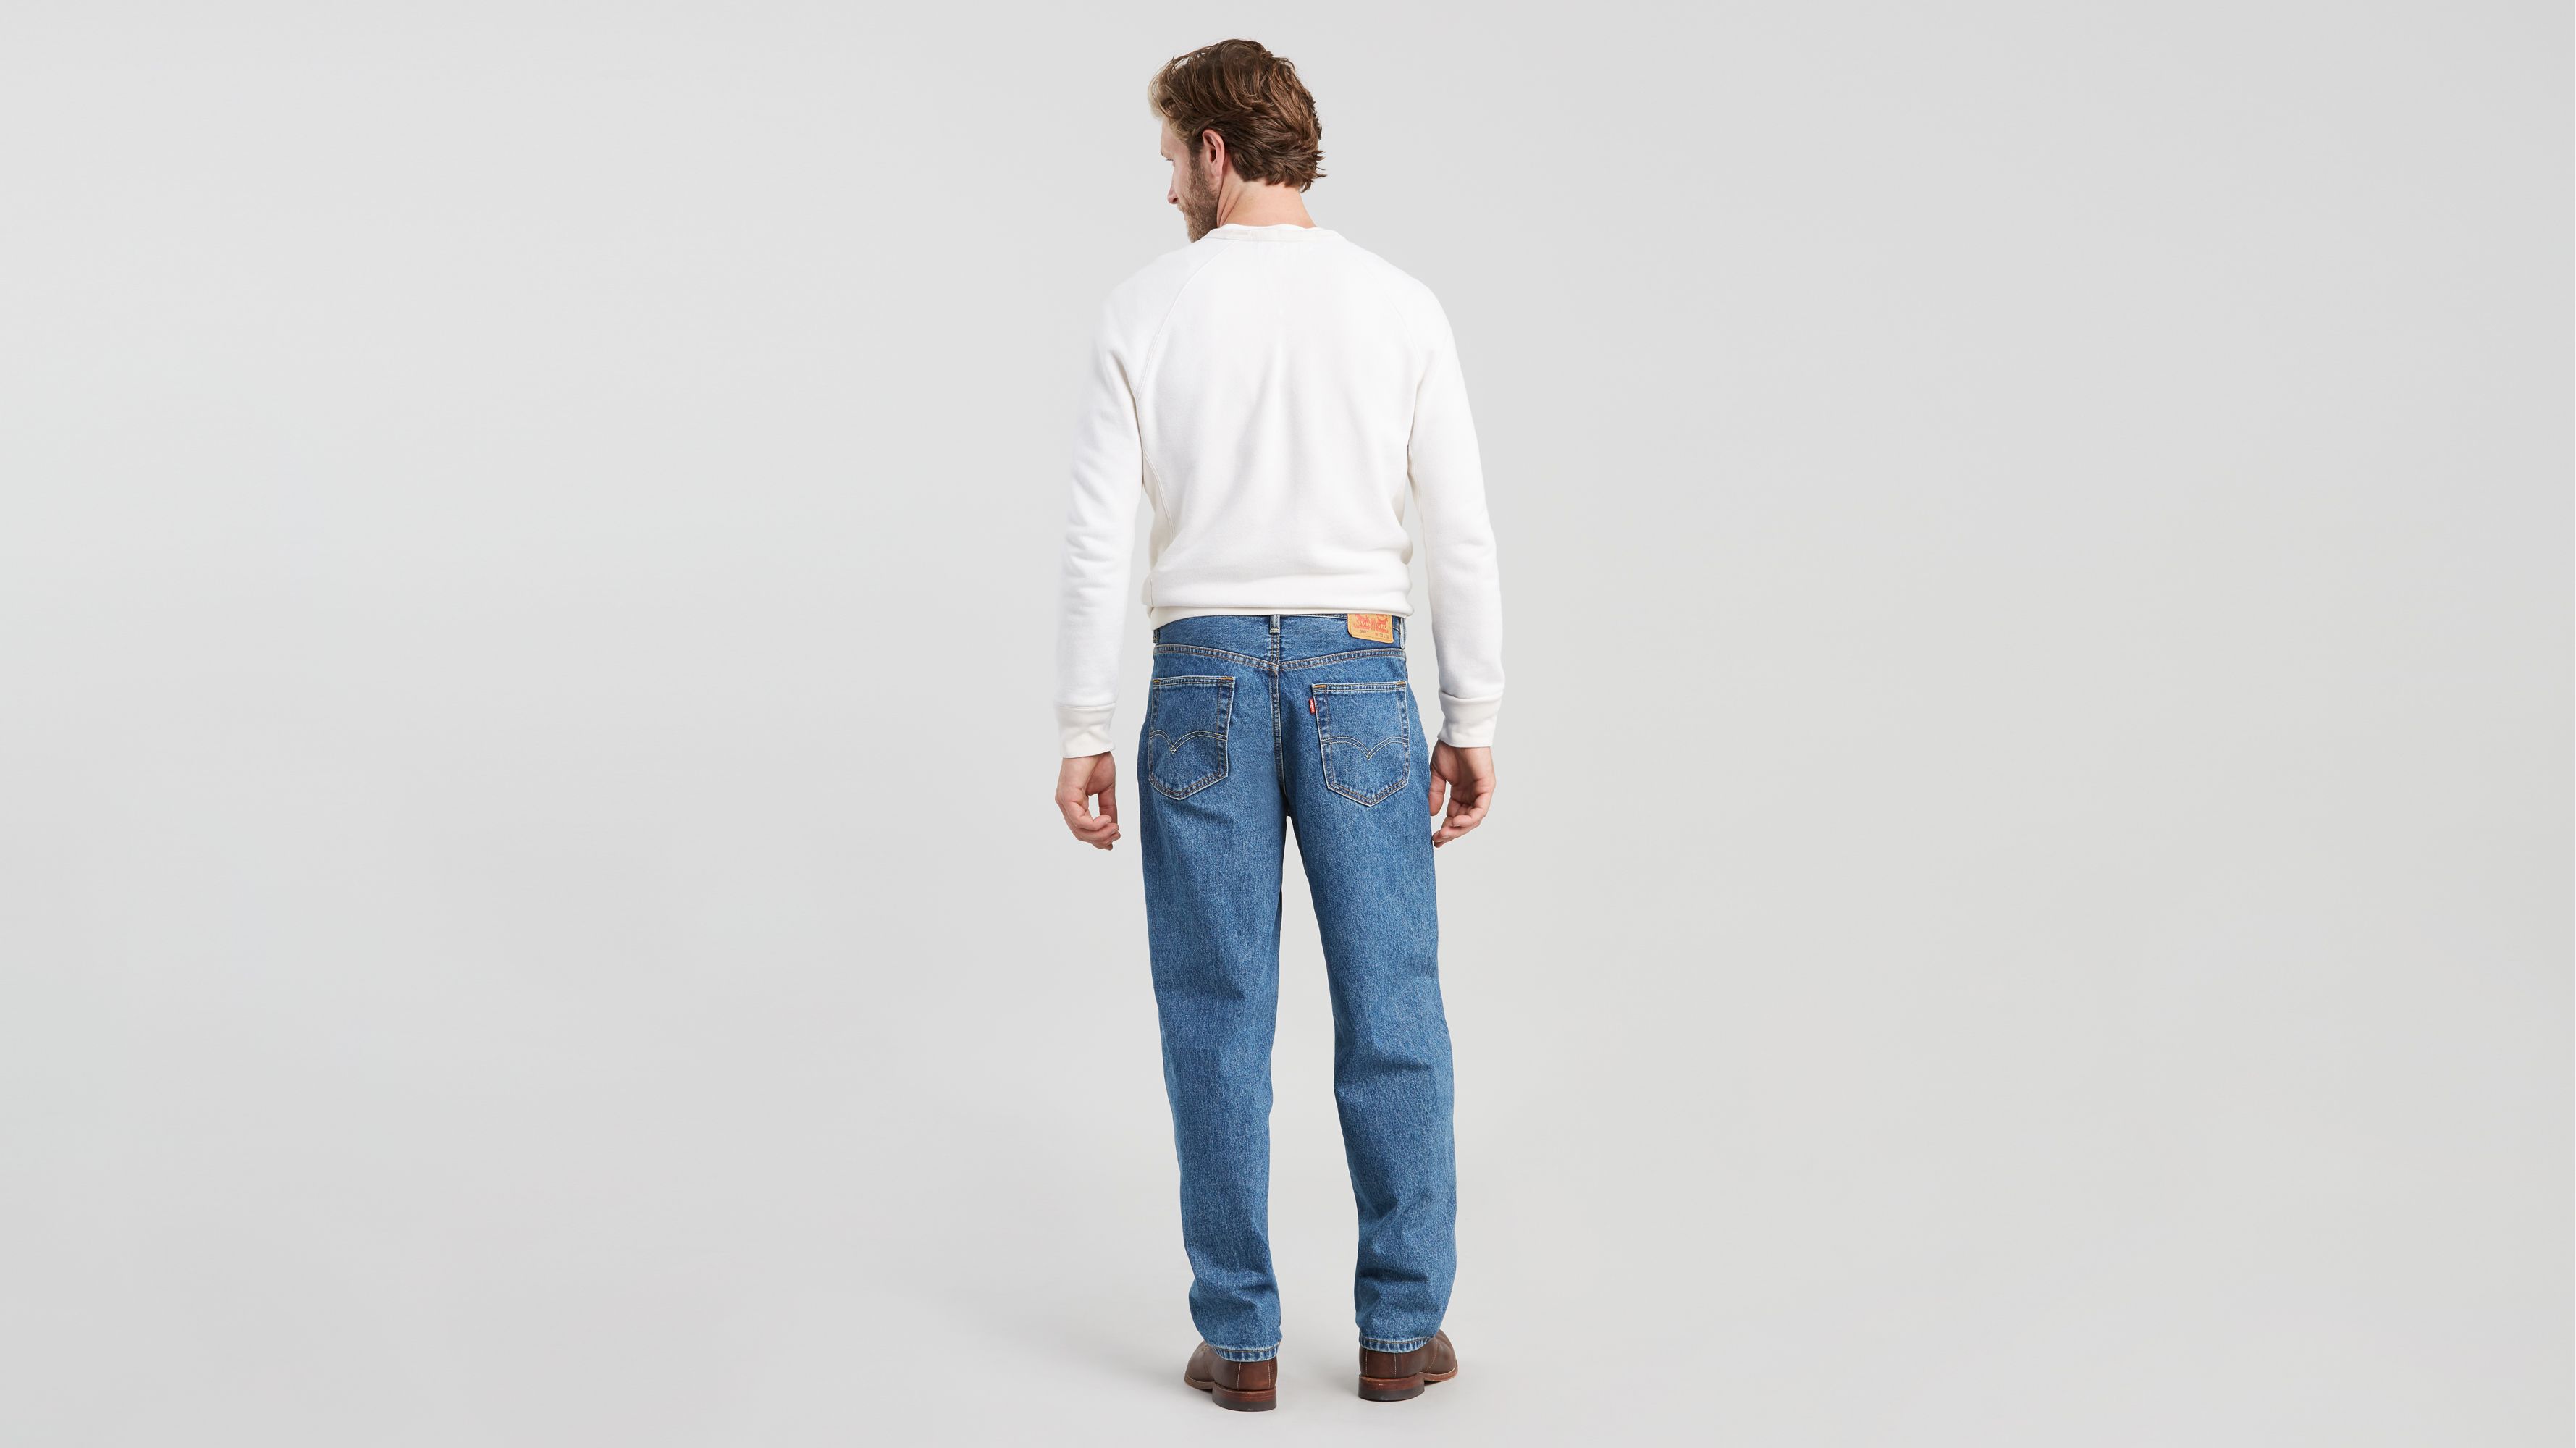 levi's 560 comfort fit jeans light stonewash